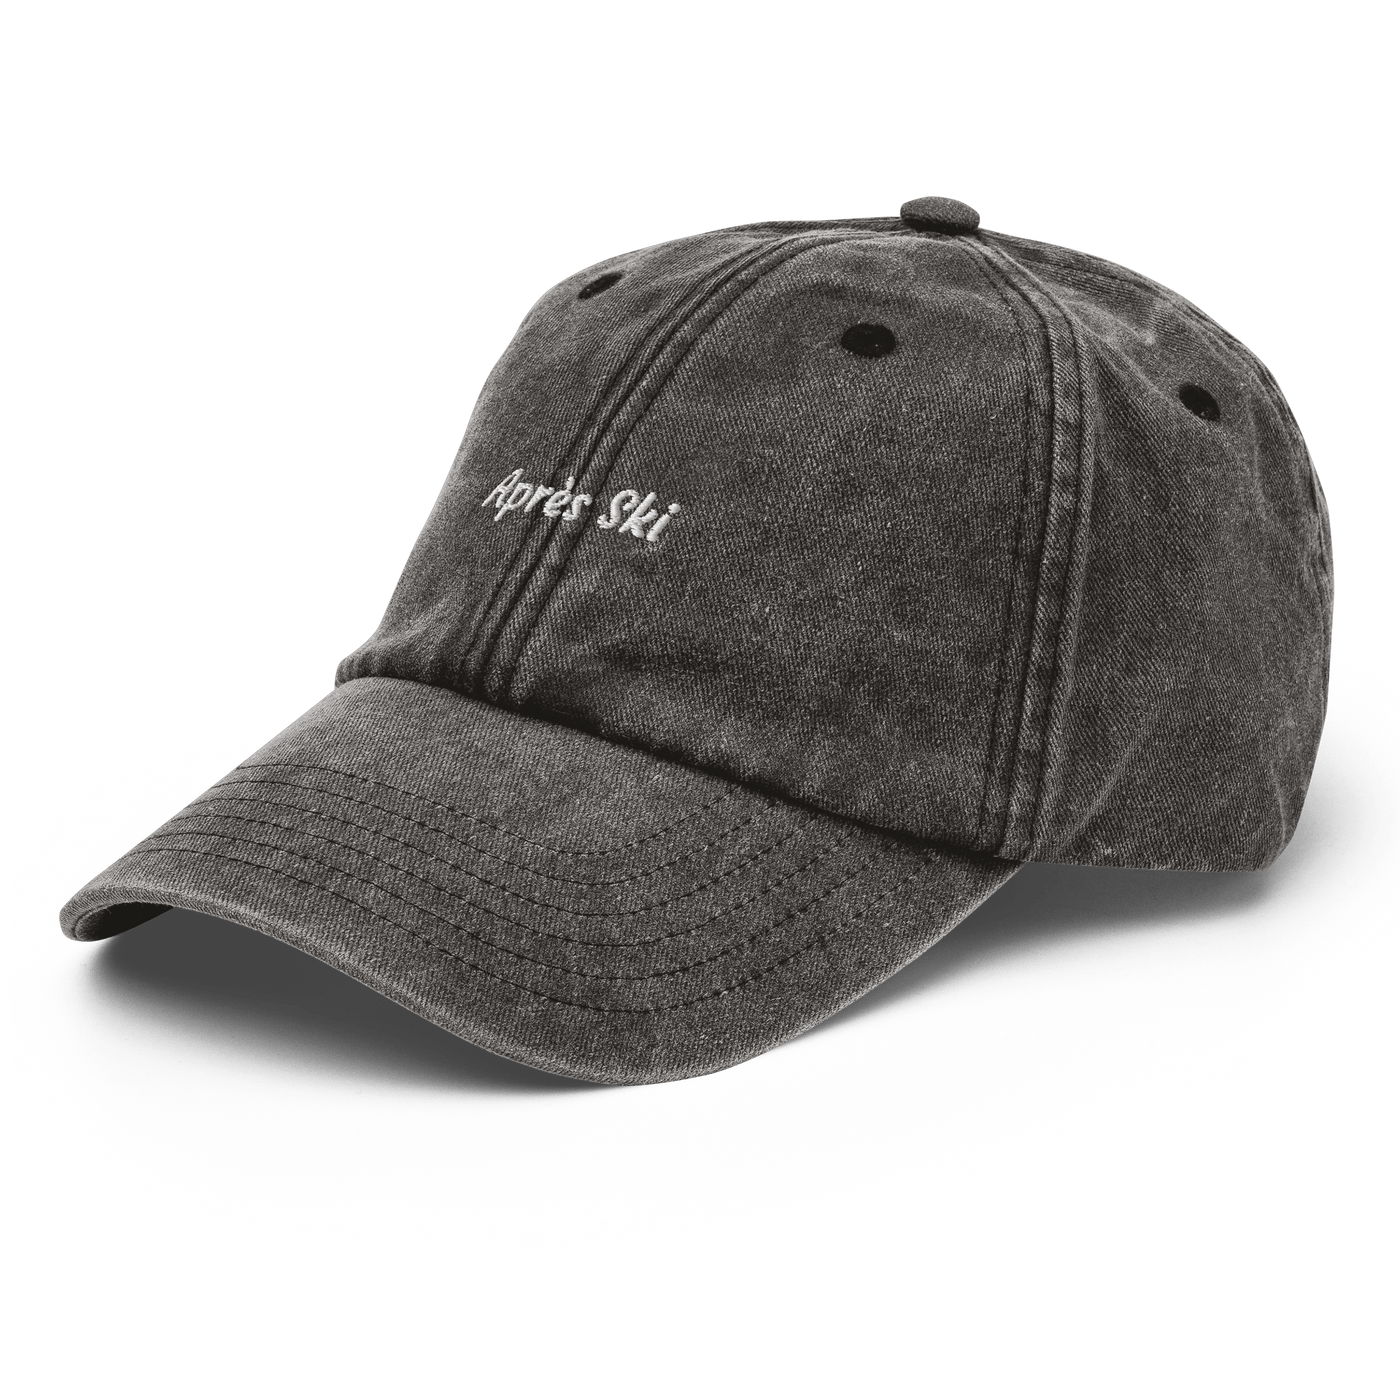 Après Ski Vintage Hat - Vintage Black - - Just Another Cap Store